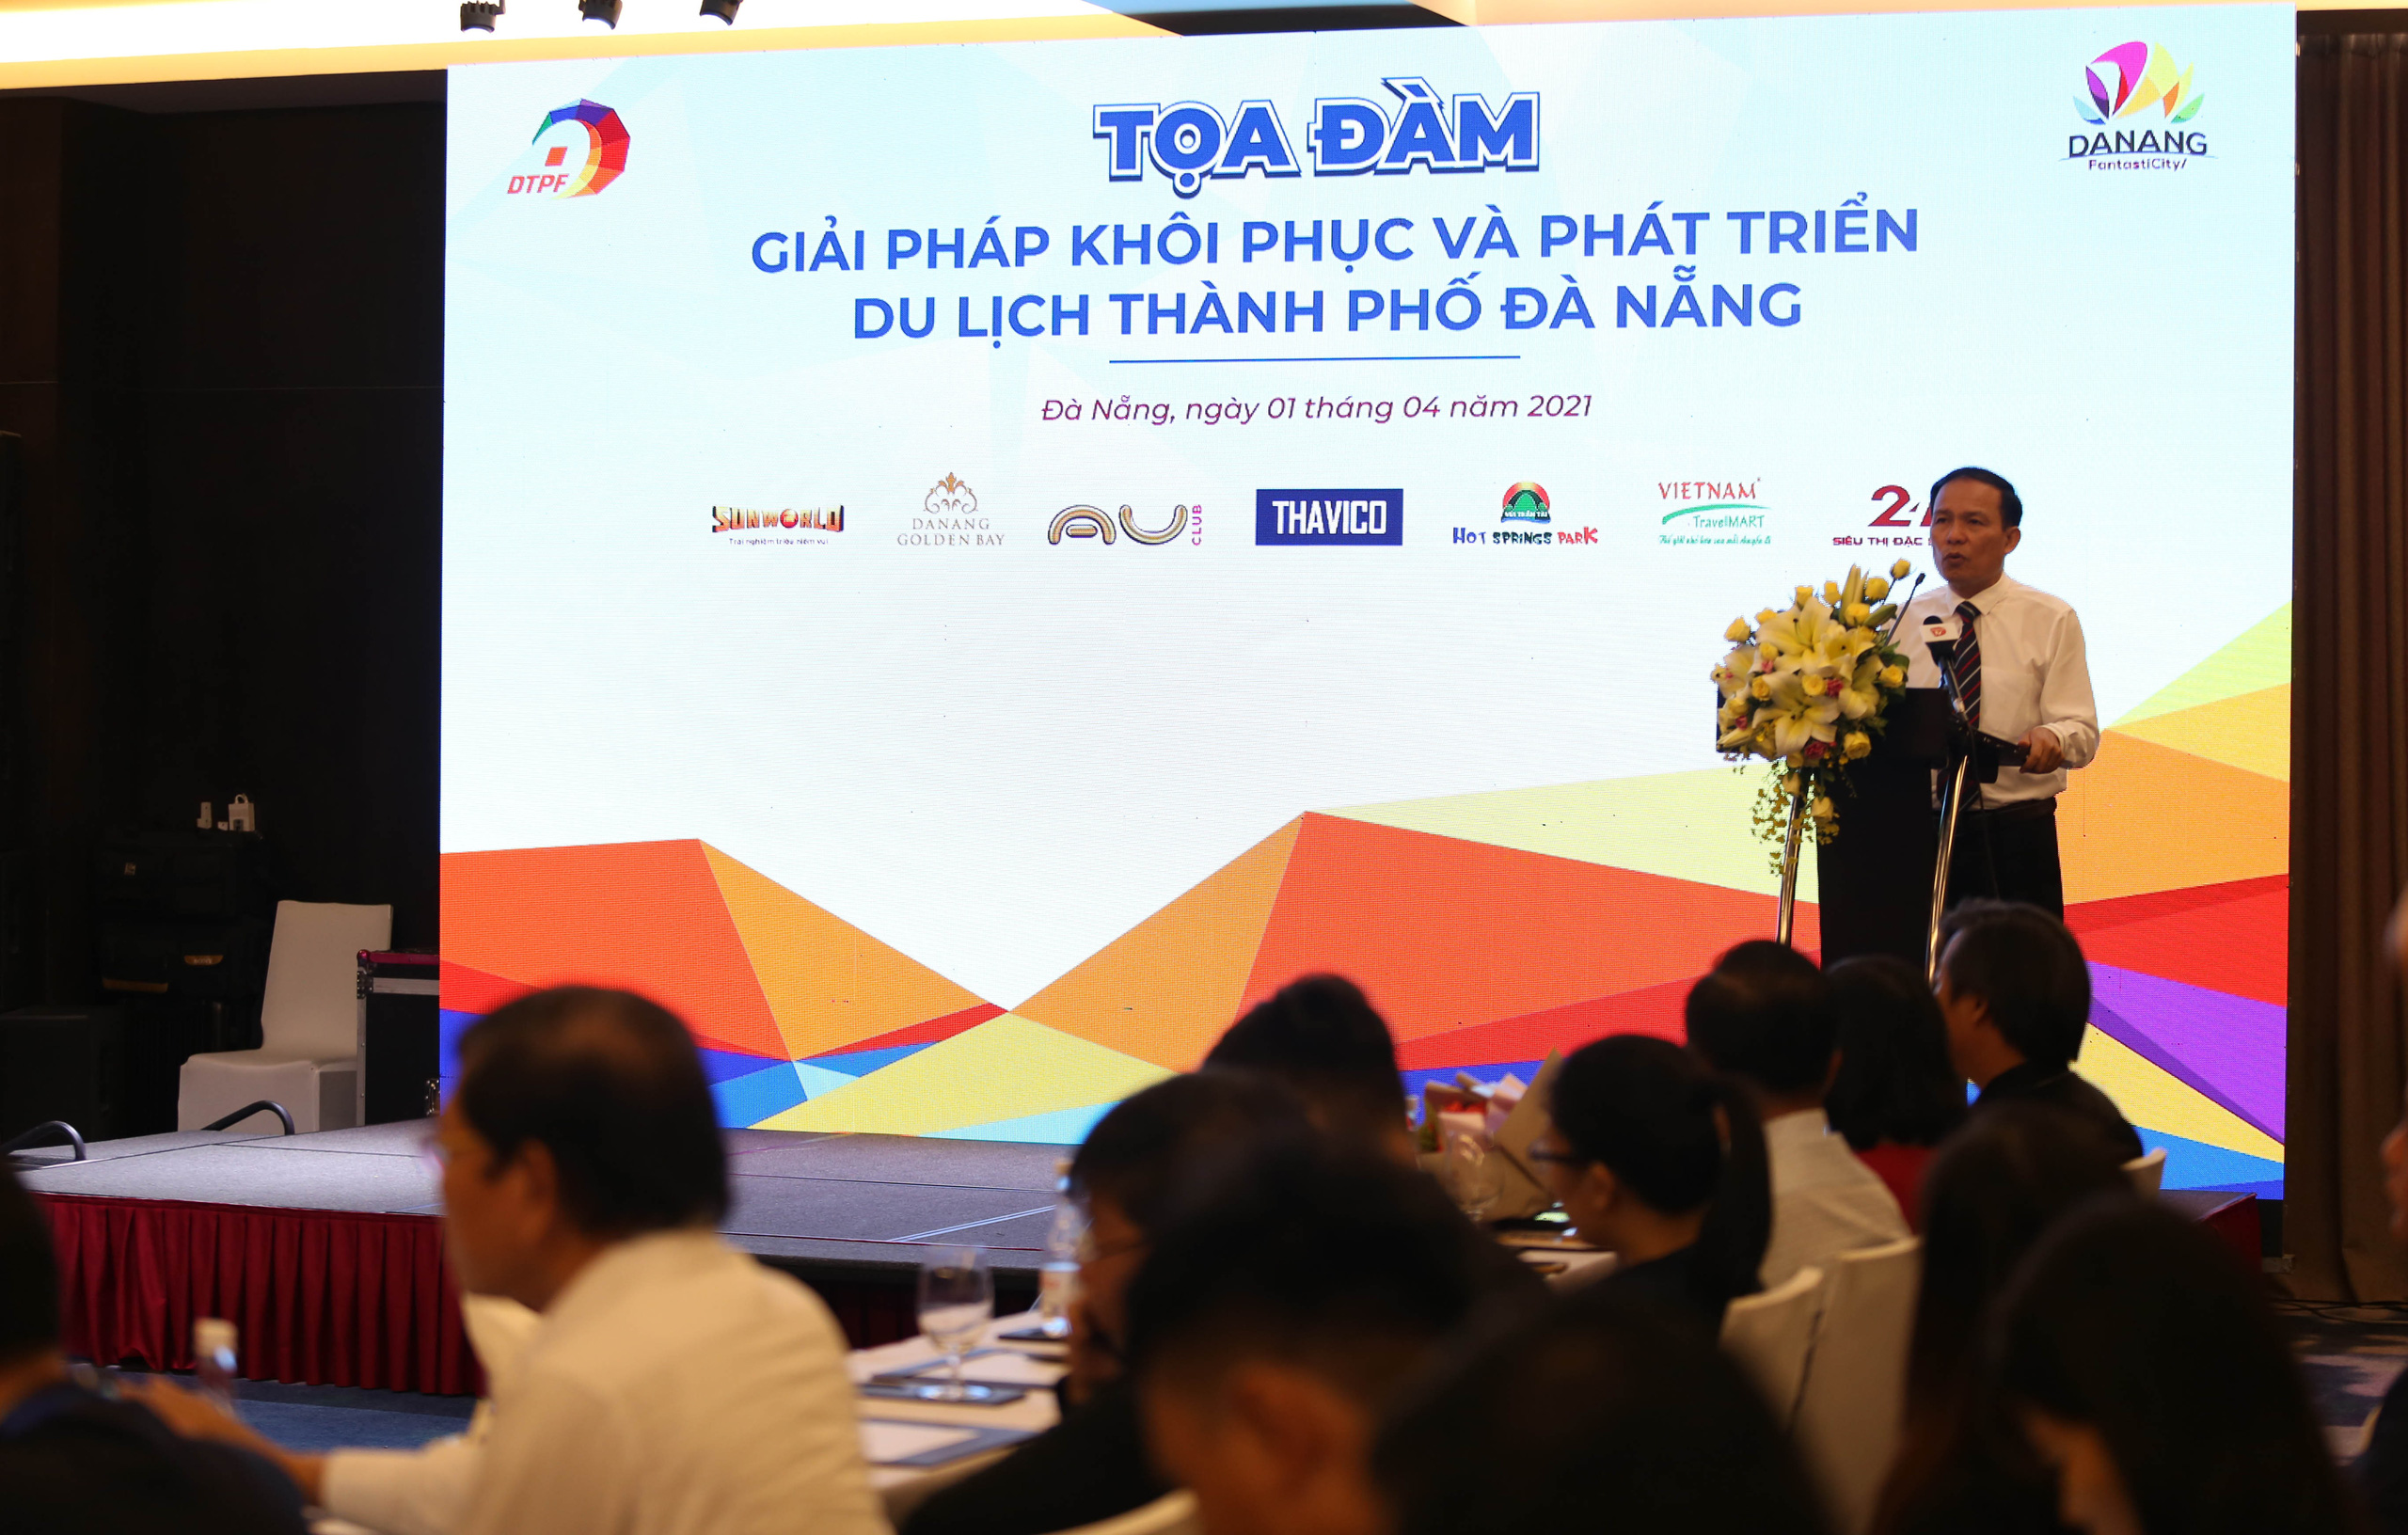 Du lịch Đà Nẵng tìm giải pháp khôi phục và phát triển trong năm 2021 - Ảnh 1.